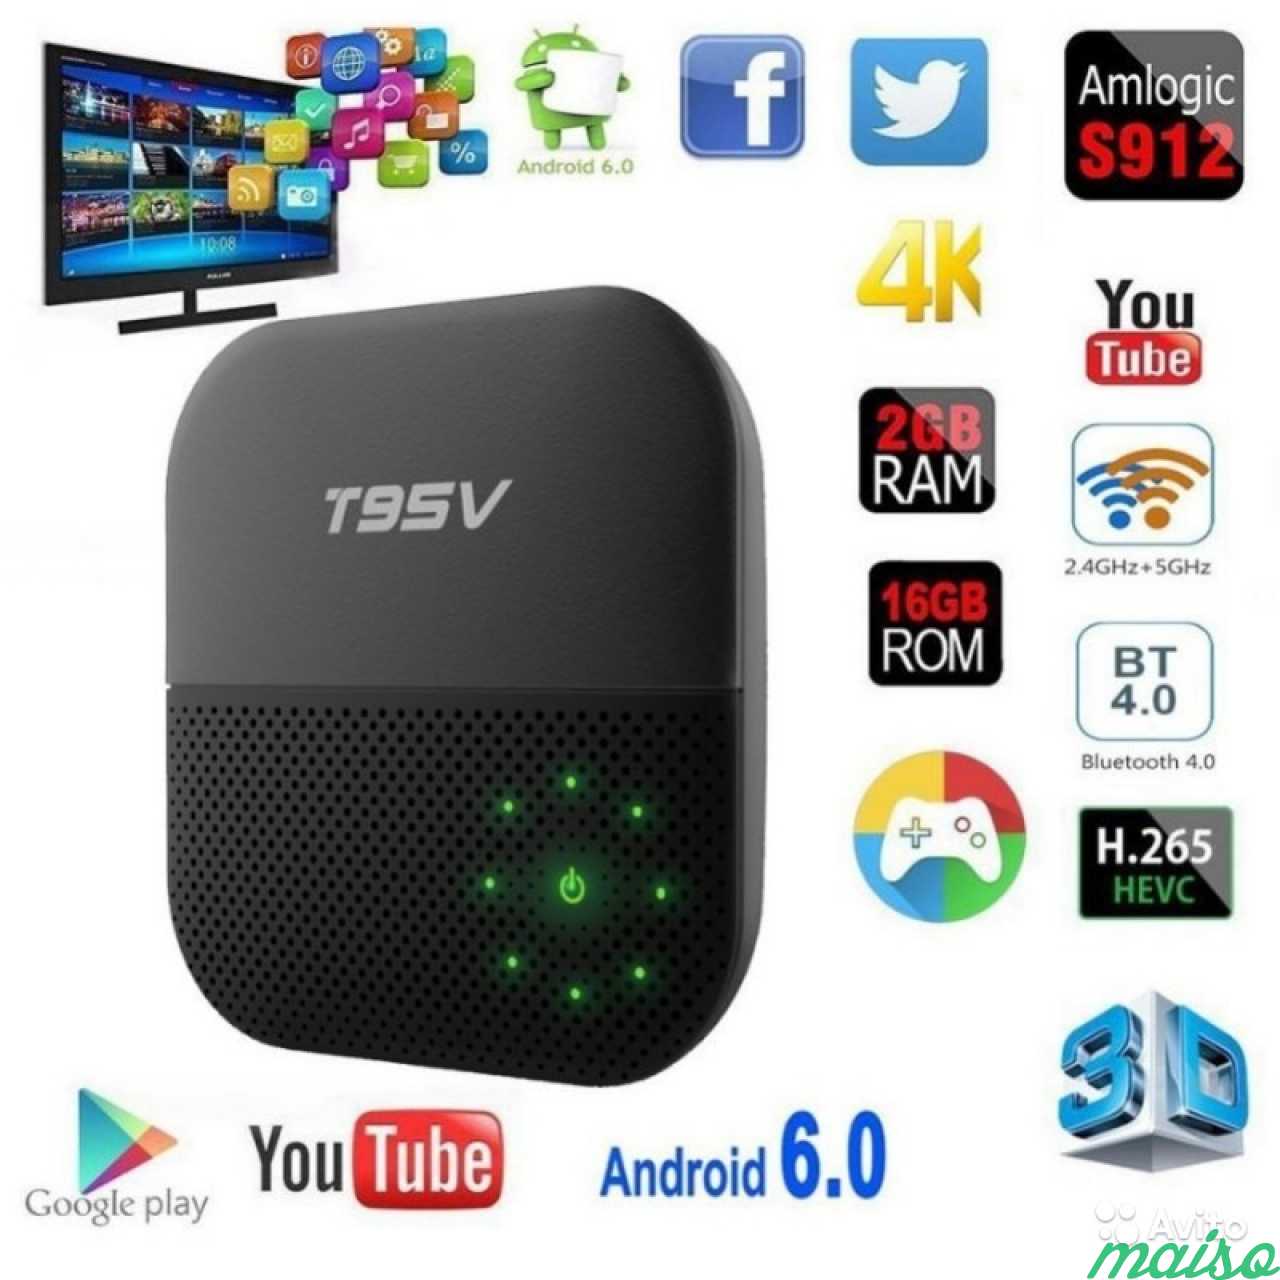 Как сделать смарт тв приставку. Приставка t95 для Smart TV. Android смарт ТВ приставки VONTAR. Медиаплеер Sunvell t95v 2gb+16gb. Wr330 IPTV приставка.